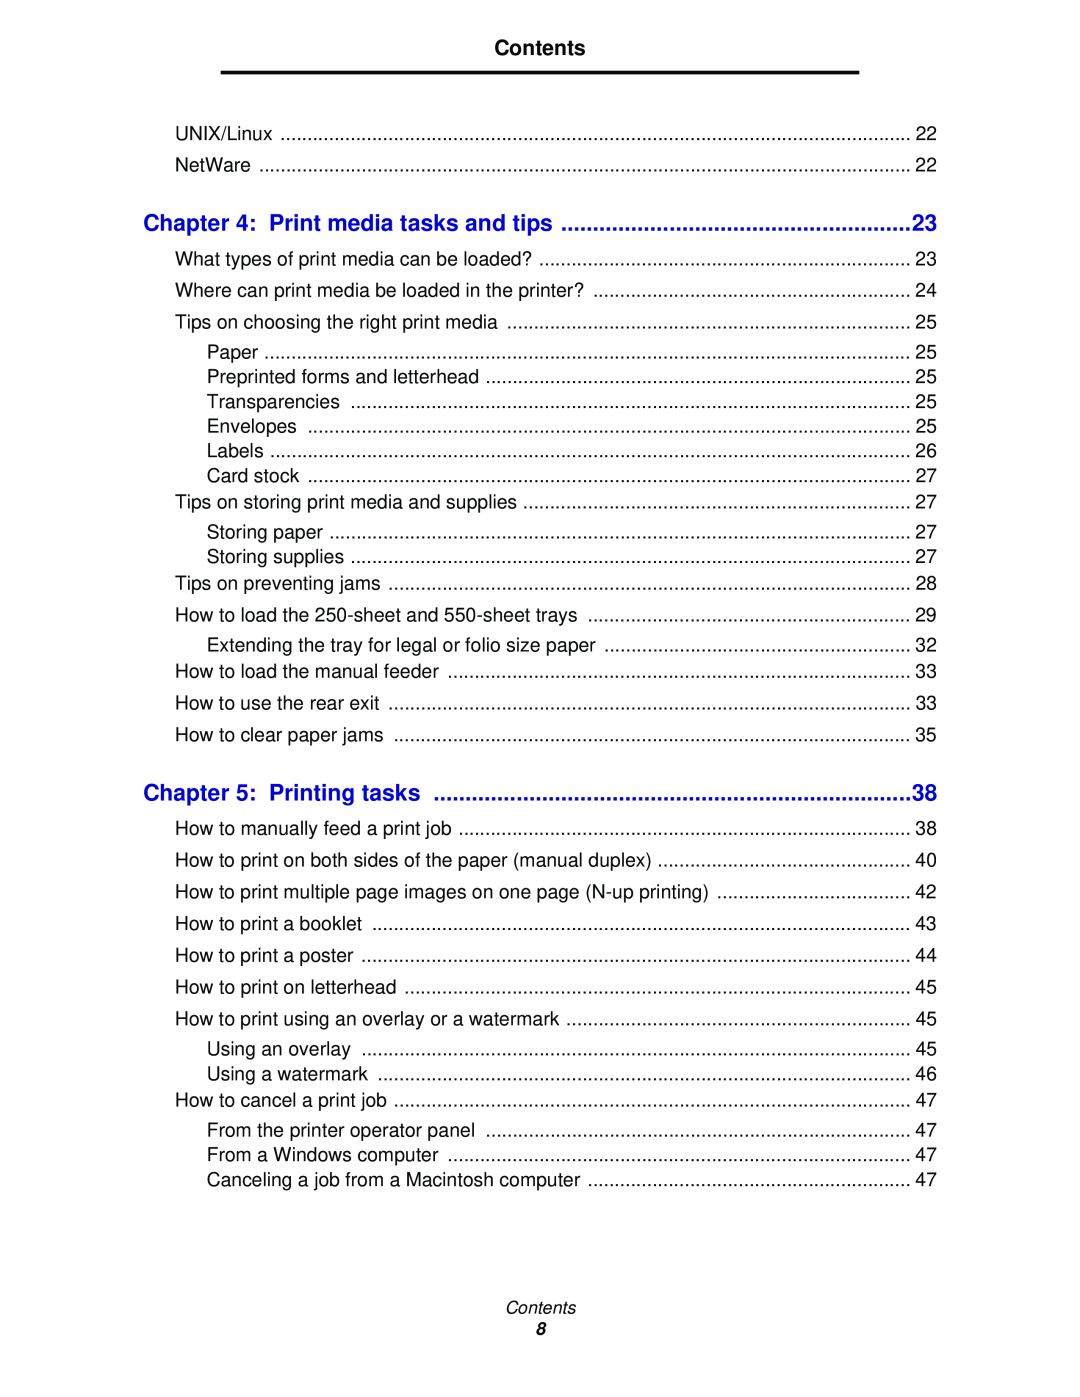 Lexmark 342n, 340 manual Print media tasks and tips, Printing tasks, Contents 